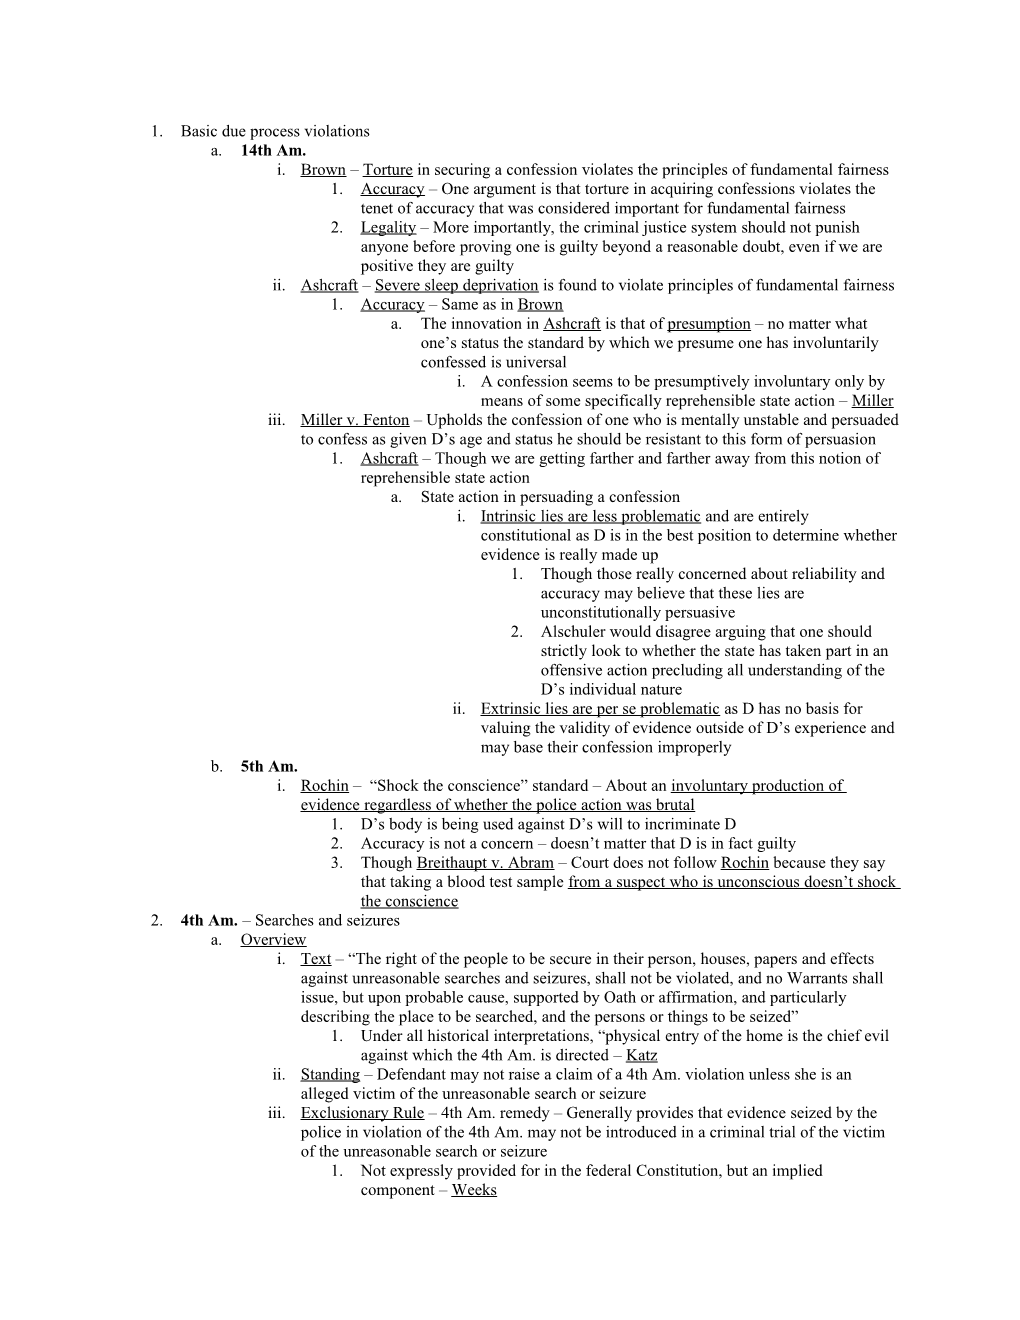 Criminal Procedure I Final Exam Outline